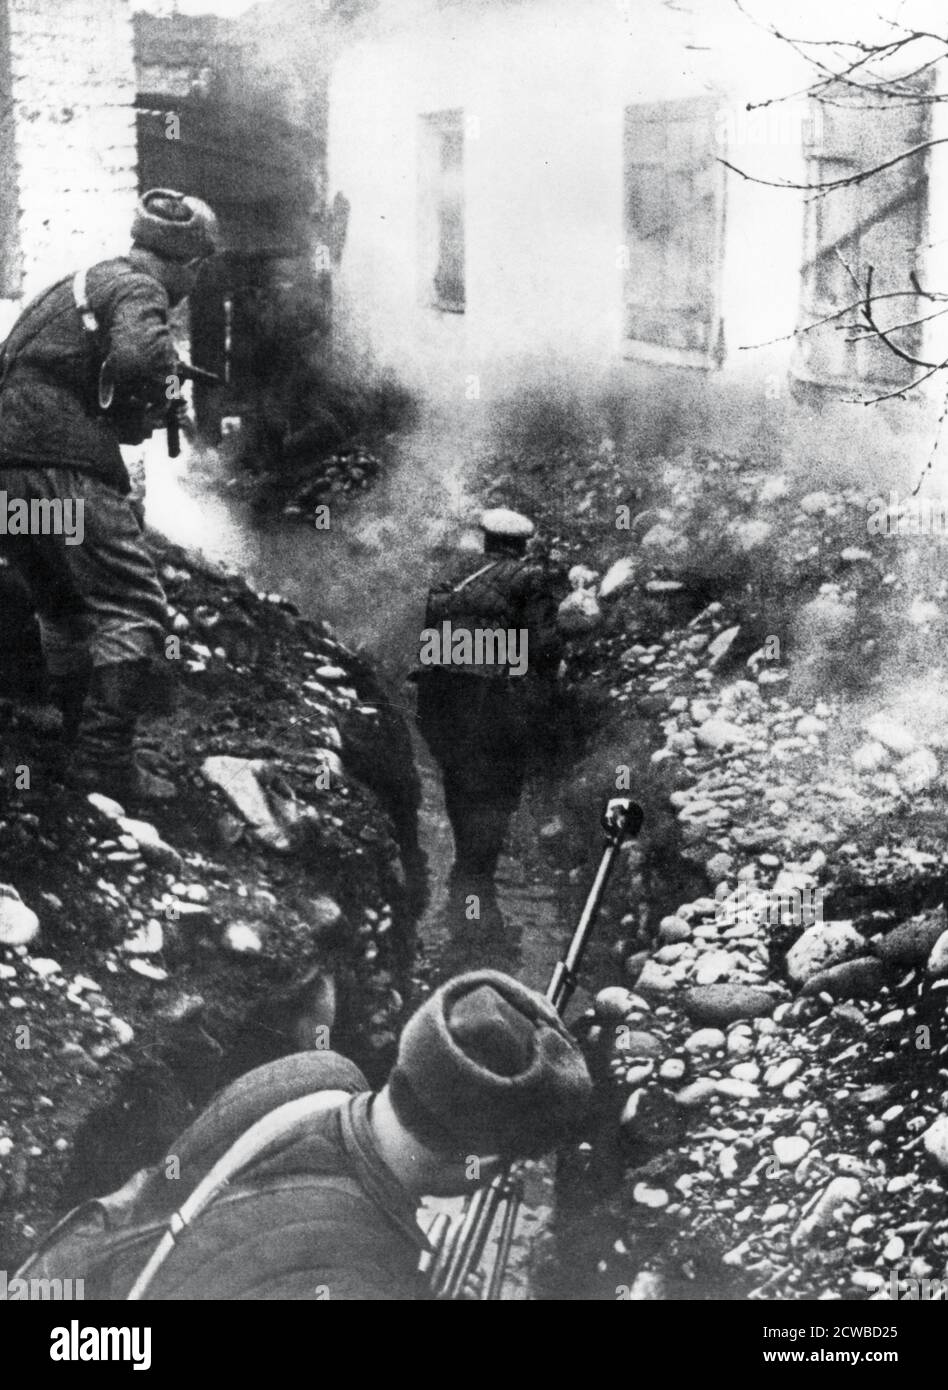 Troupes russes libérant un village près d'Ordhonikidze, Caucase, 1942. L'offensive allemande visant à sécuriser les gisements de pétrole de l'Azerbaïdjan a été interrompue par l'Armée rouge dans le Caucase à l'automne 1942. A partir de janvier 1943, plusieurs contre-offensives russes, associées à la catastrophe imminente de Stalingrad, ont forcé les Allemands à se retirer. Le photographe est inconnu. Banque D'Images